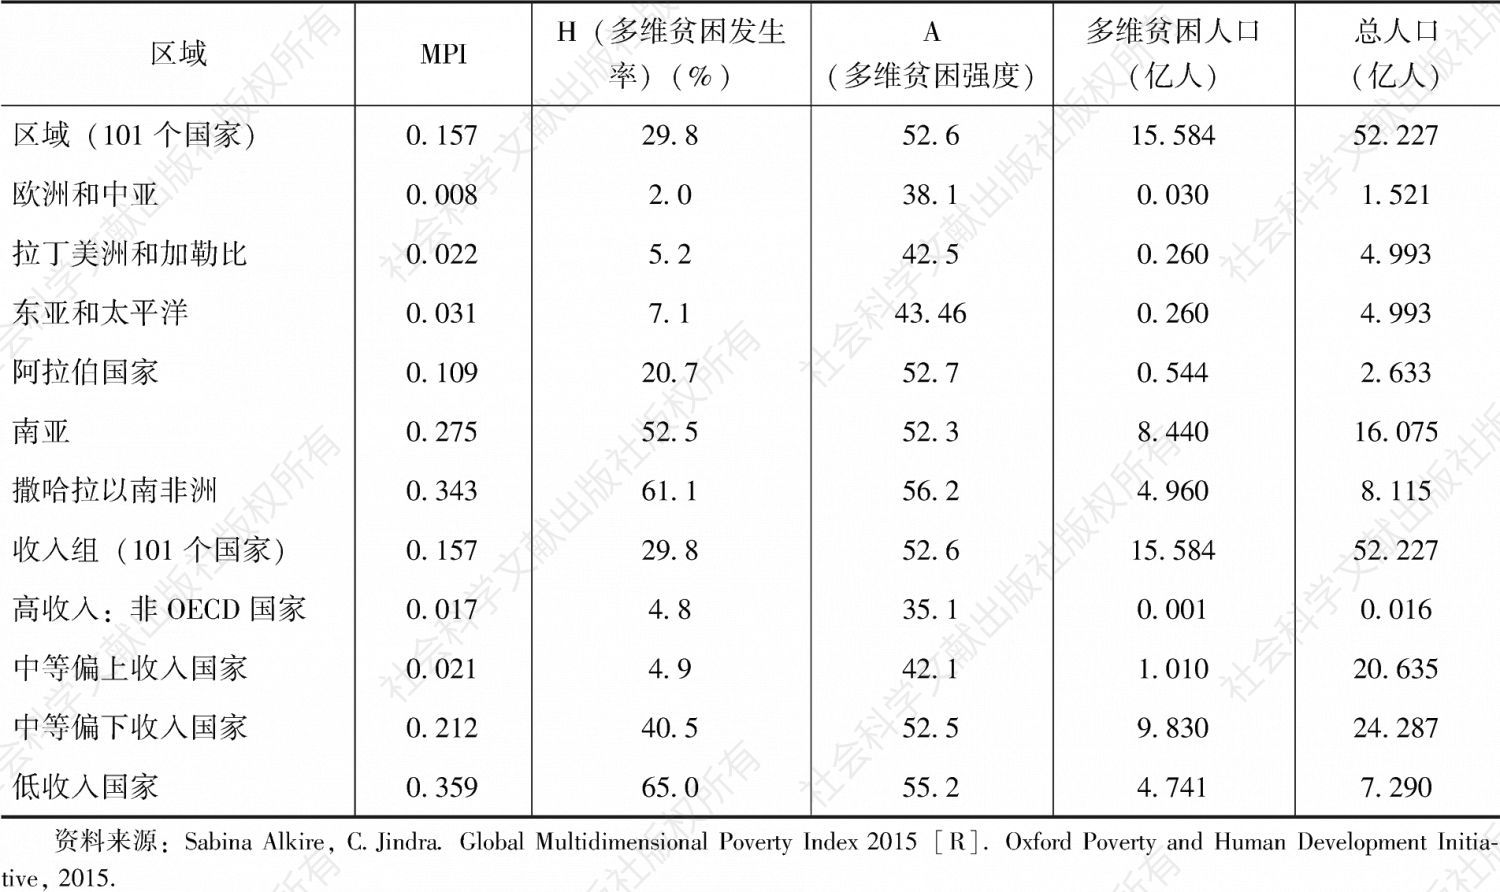 表1-5 全球多维贫困状况（2015）